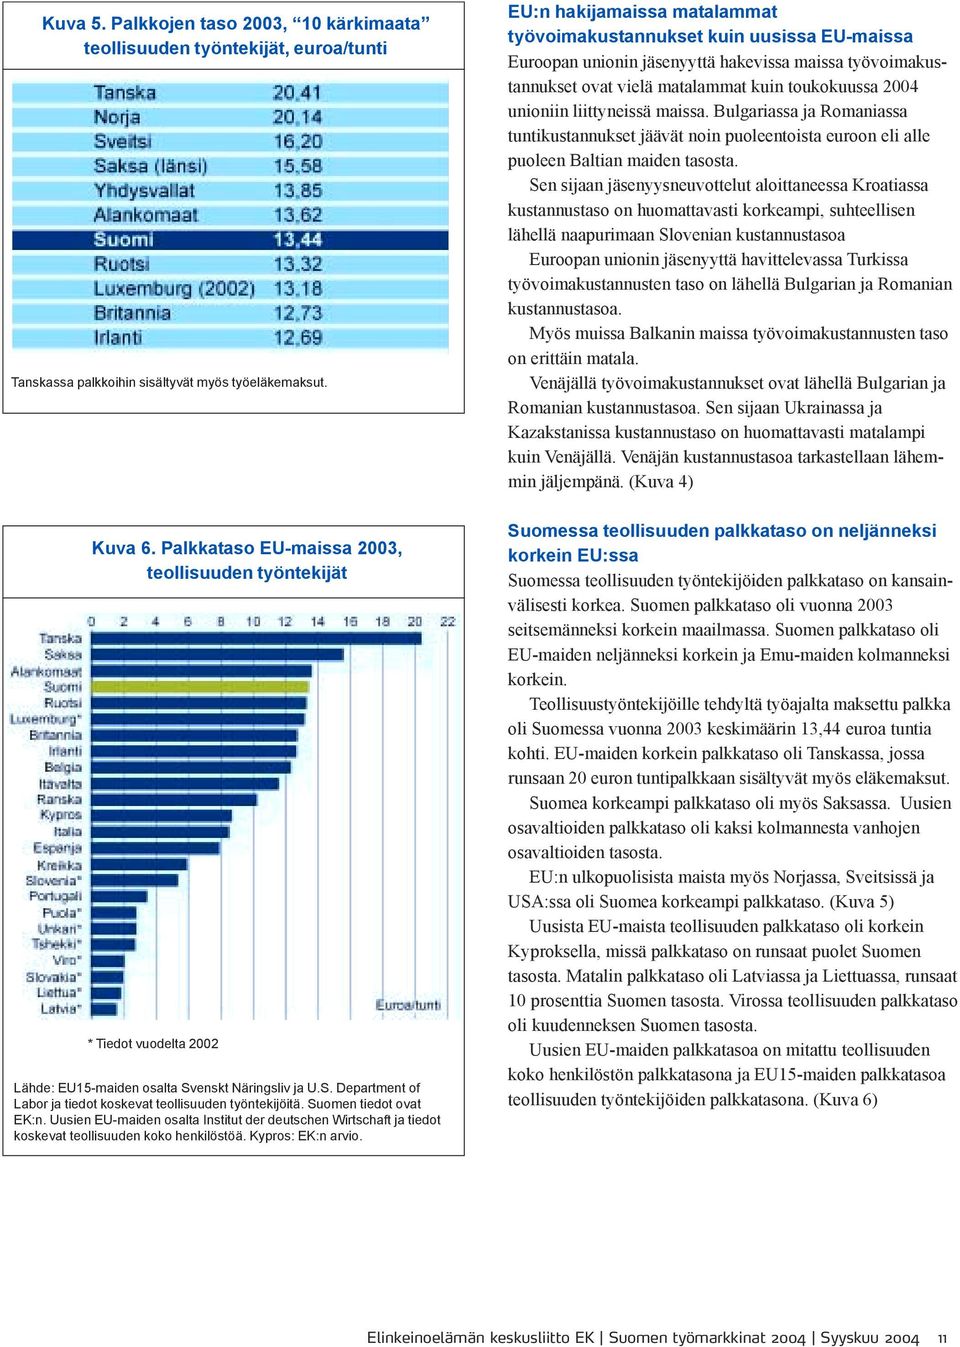 Suomen tiedot ovat EK:n. Uusien EU-maiden osalta Institut der deutschen Wirtschaft ja tiedot koskevat teollisuuden koko henkilöstöä. Kypros: EK:n arvio.